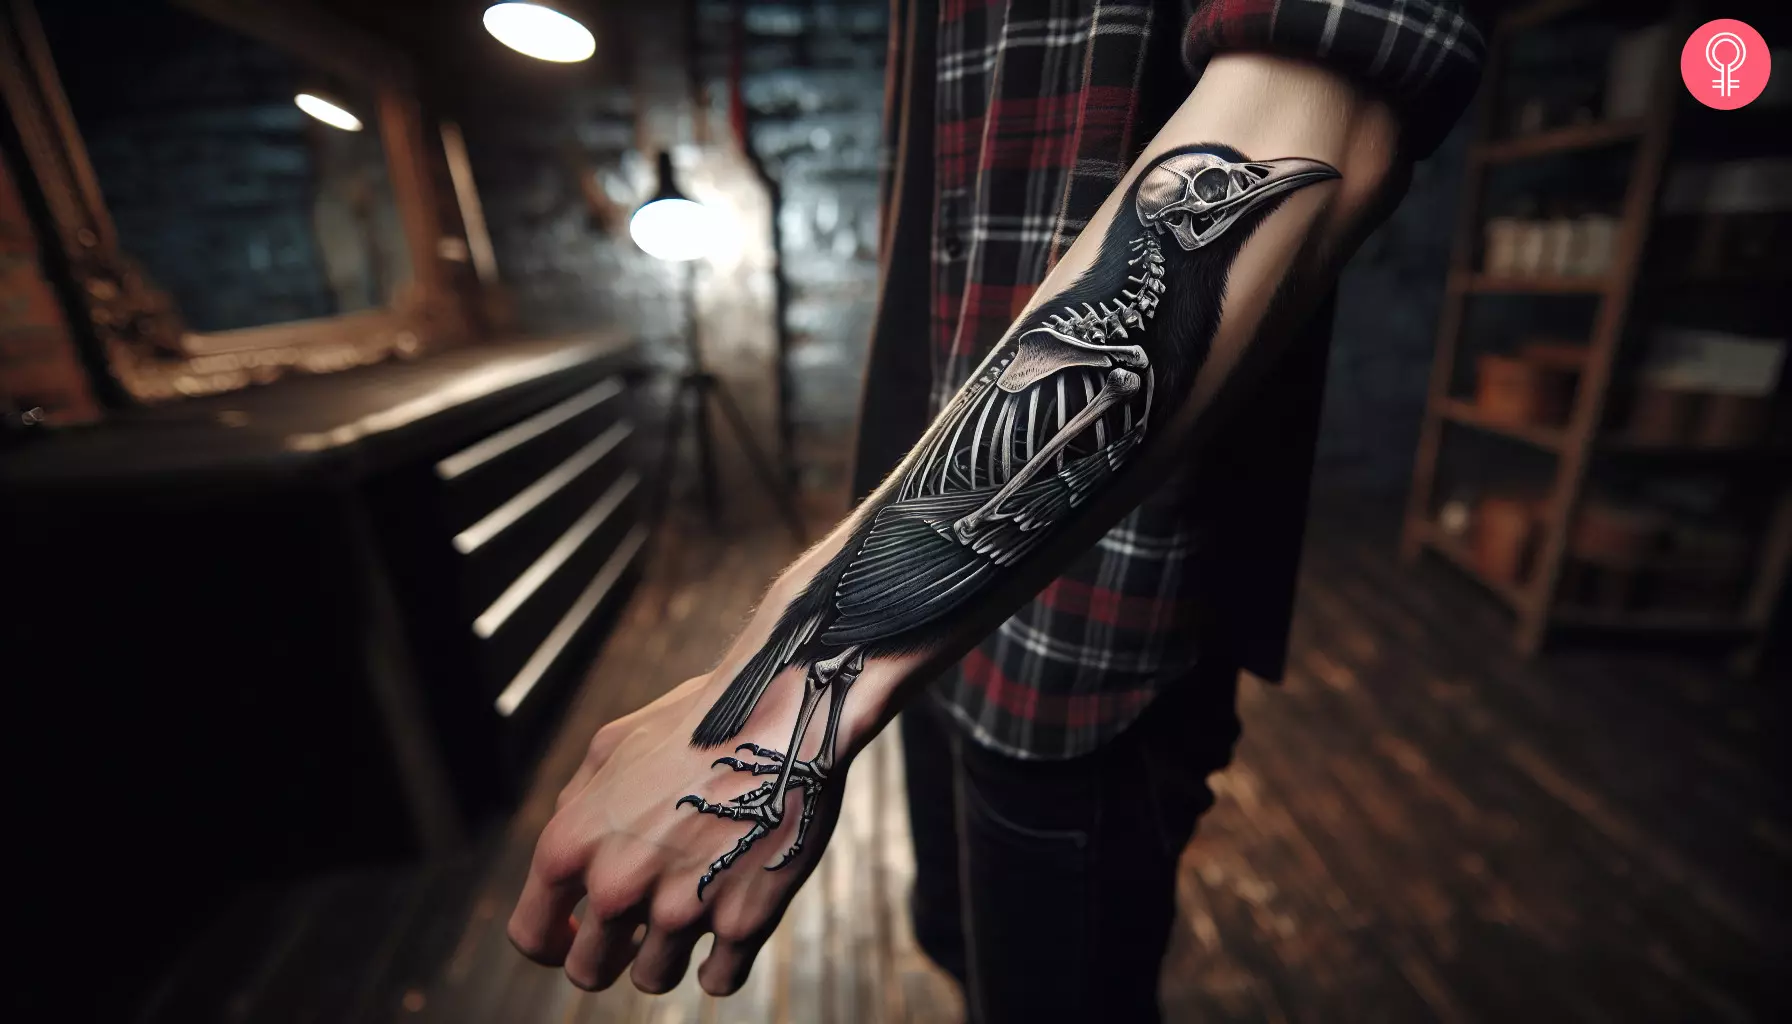 Bird skeleton tattoo on the forearm of a man